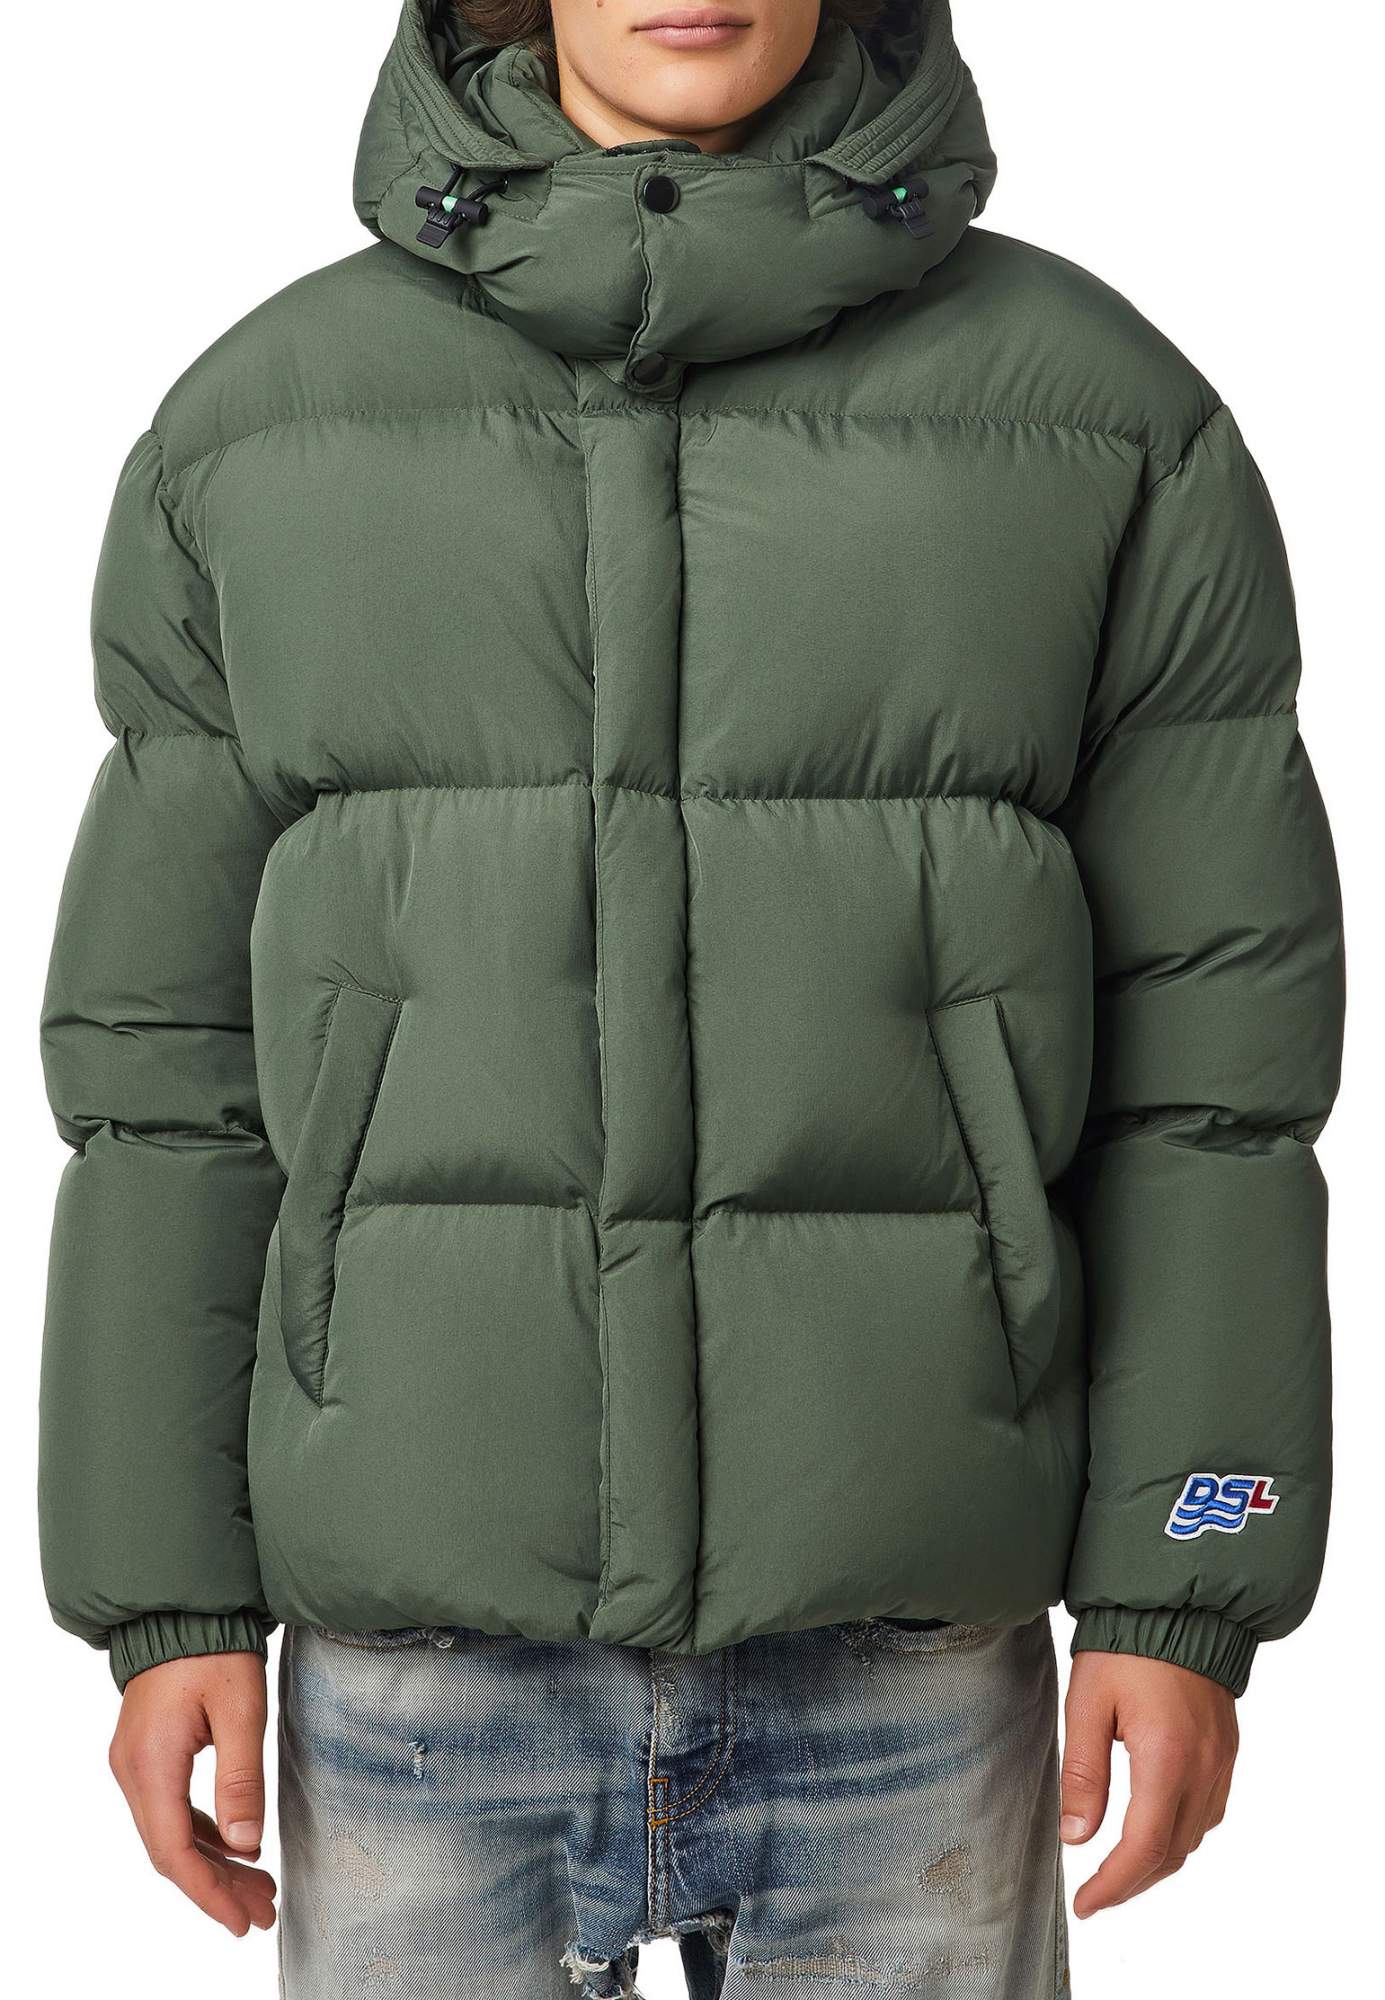 Зимняя куртка мужская DIESEL 130051 зеленая 2XL